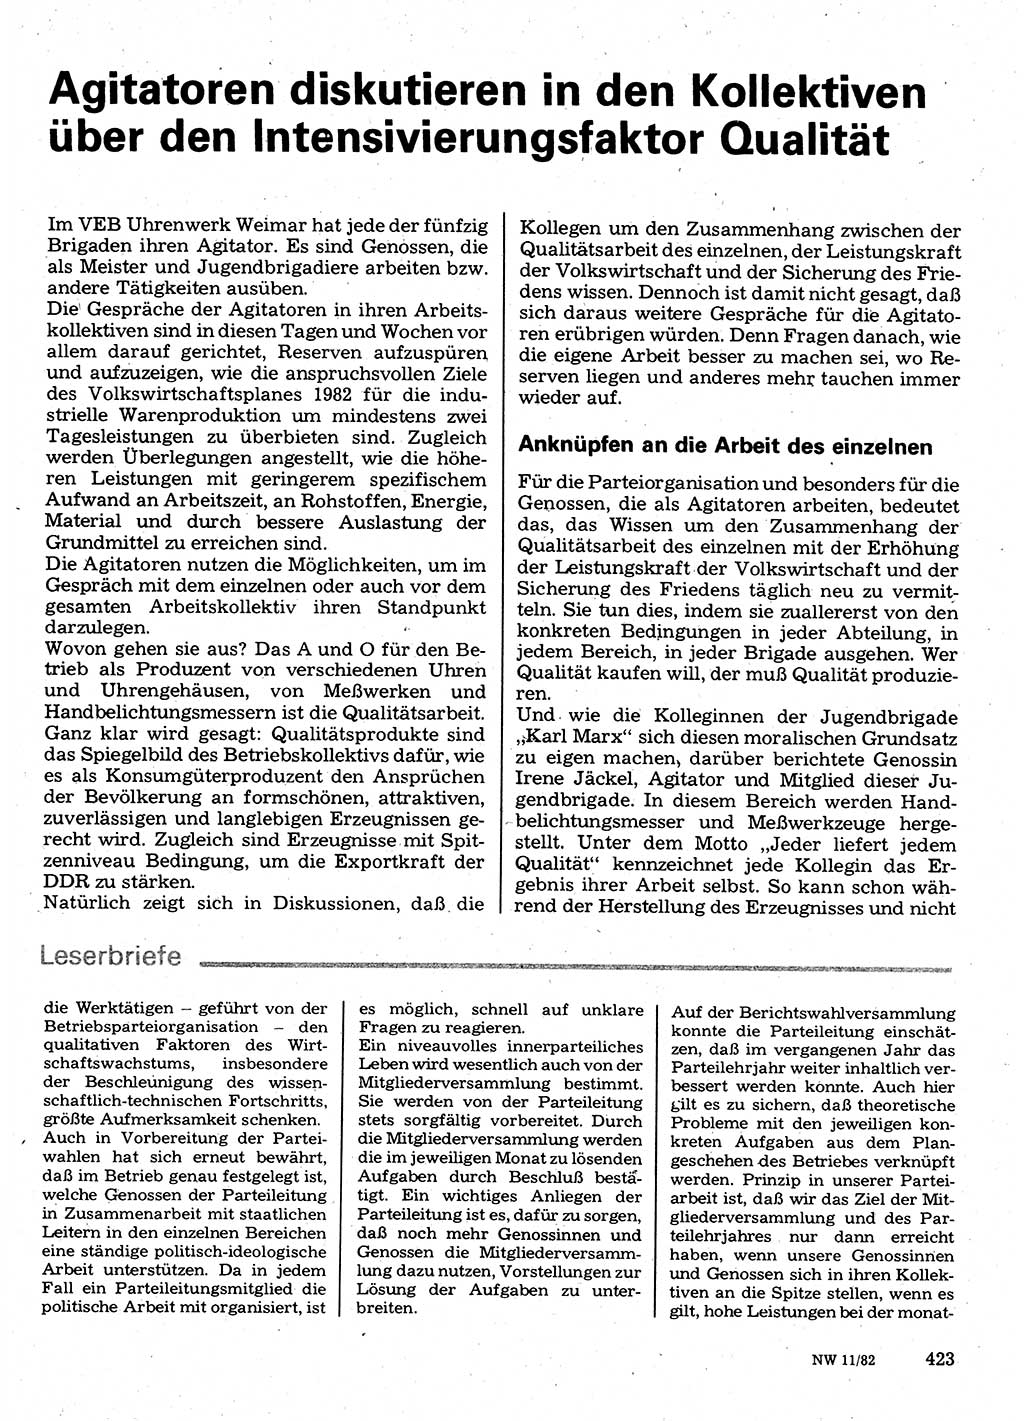 Neuer Weg (NW), Organ des Zentralkomitees (ZK) der SED (Sozialistische Einheitspartei Deutschlands) für Fragen des Parteilebens, 37. Jahrgang [Deutsche Demokratische Republik (DDR)] 1982, Seite 423 (NW ZK SED DDR 1982, S. 423)